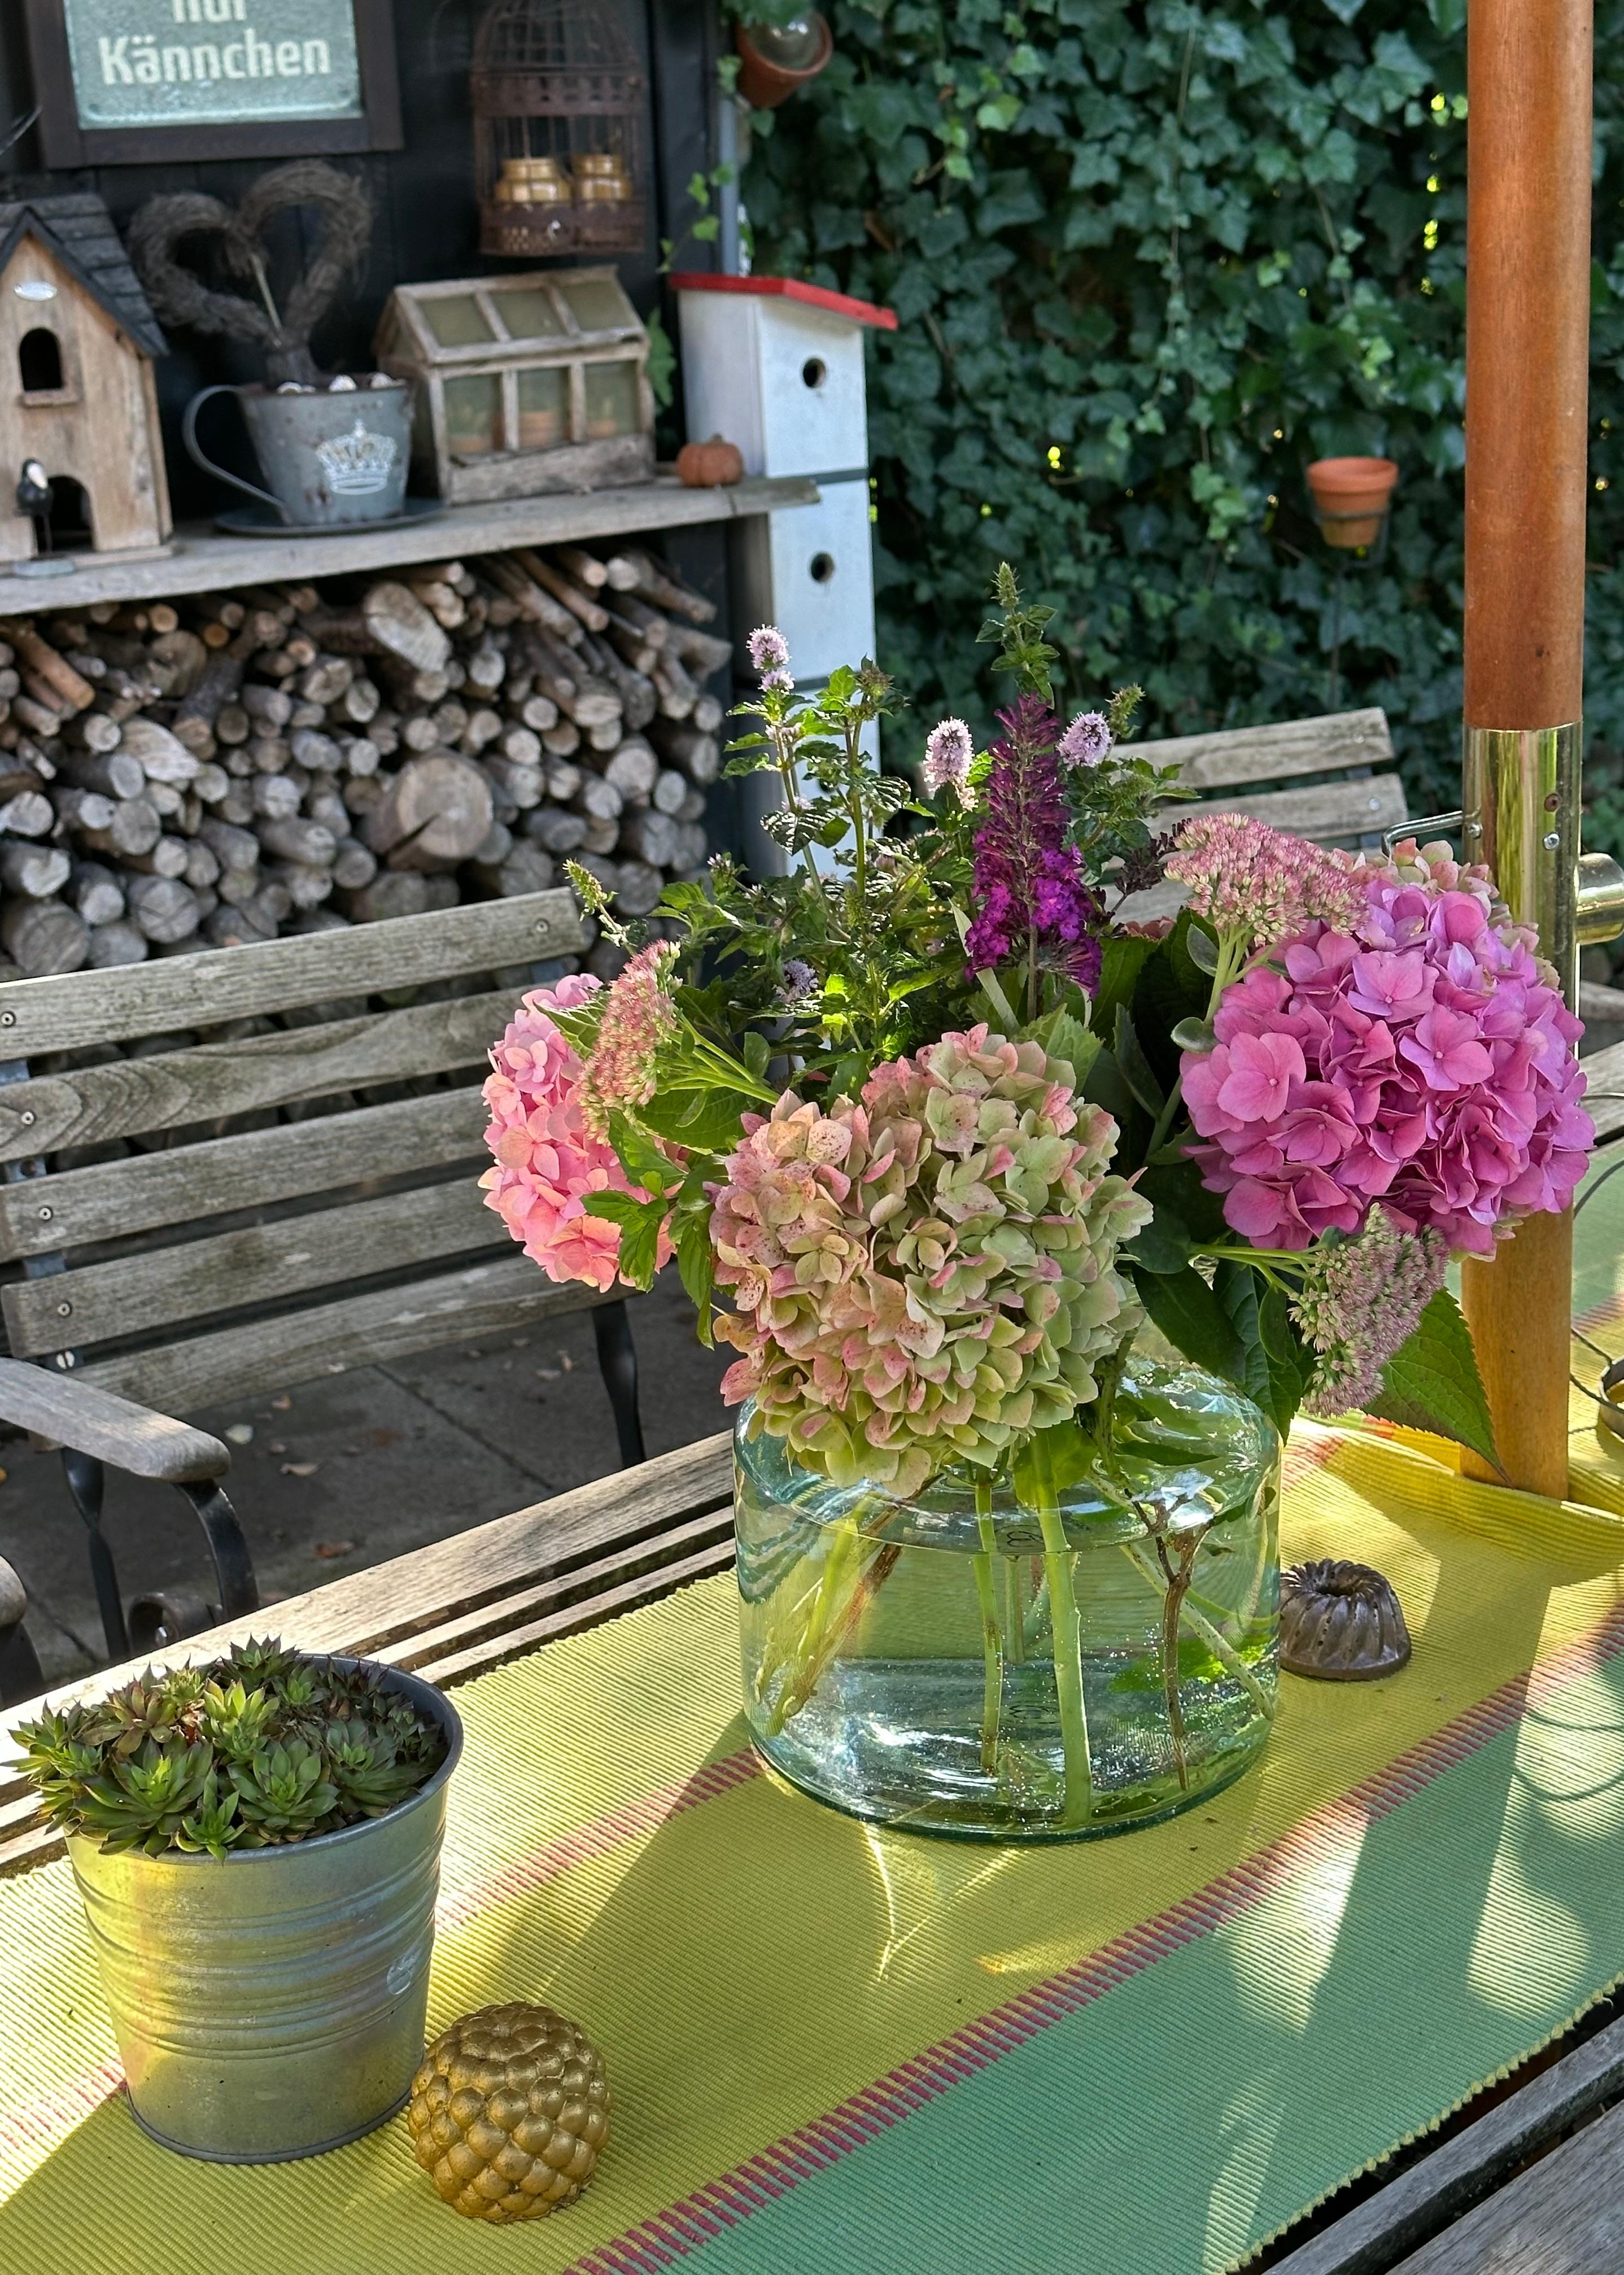 Blumenstrauß aus dem Garten von meiner Freundin bekommen🥰.
#Hortensien #Blumenstrauss #Garten #Terrasse #Sommer